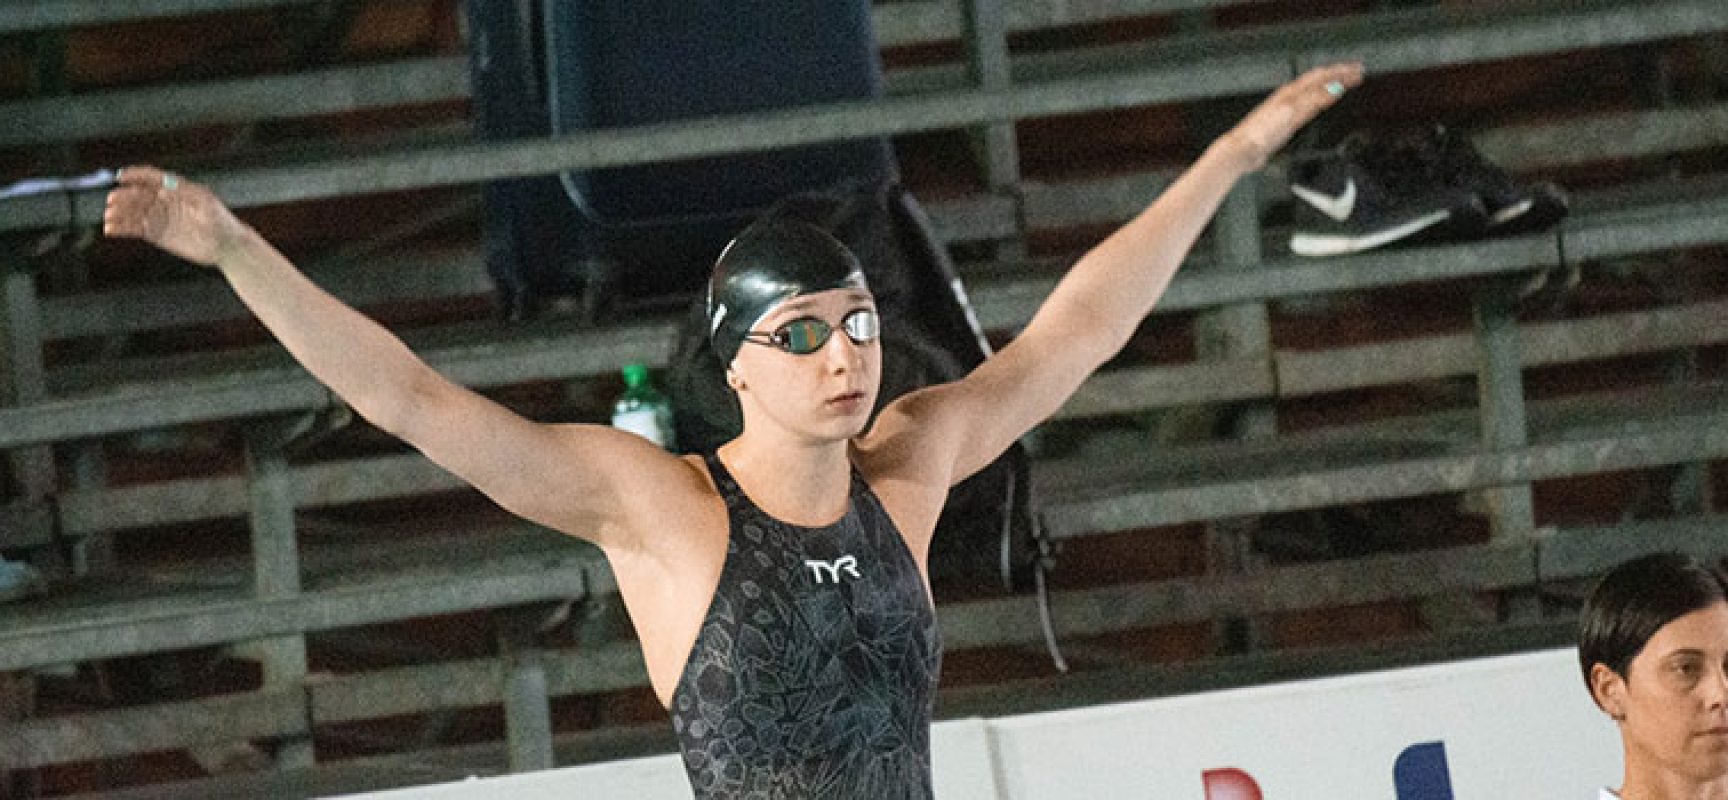 Assoluti di nuoto, Elena Di Liddo in vasca per staccare il pass per le Olimpiadi